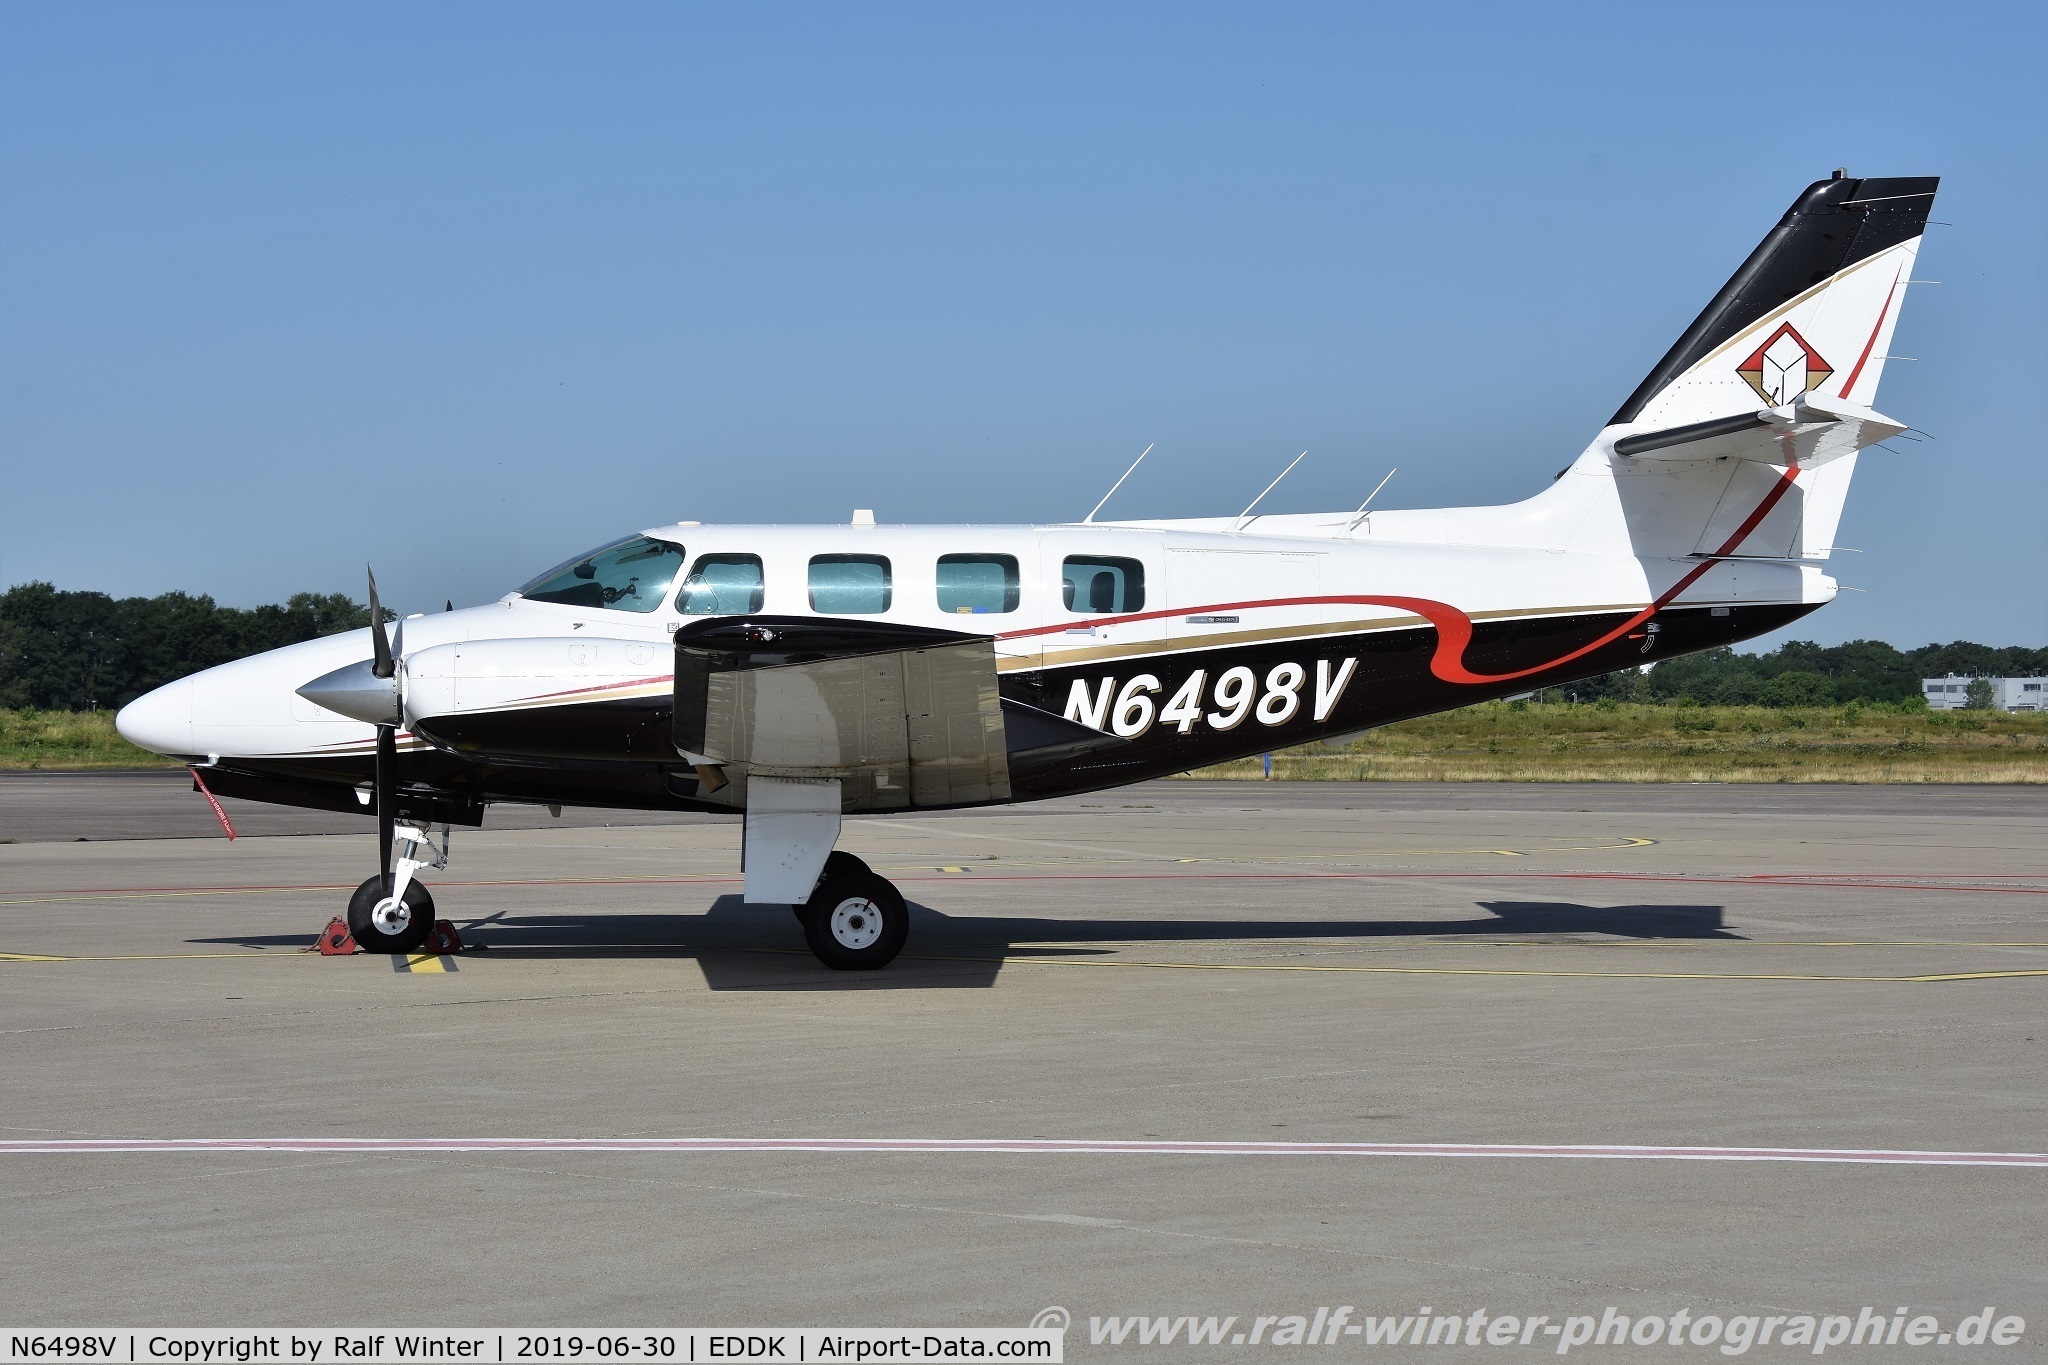 N6498V, 1984 Cessna T303 Crusader C/N T30300313, Cessna T303 Crusader - Southern Aircraft Consultancy - T30300313 - N6498V - 30.06.2019 - CGN